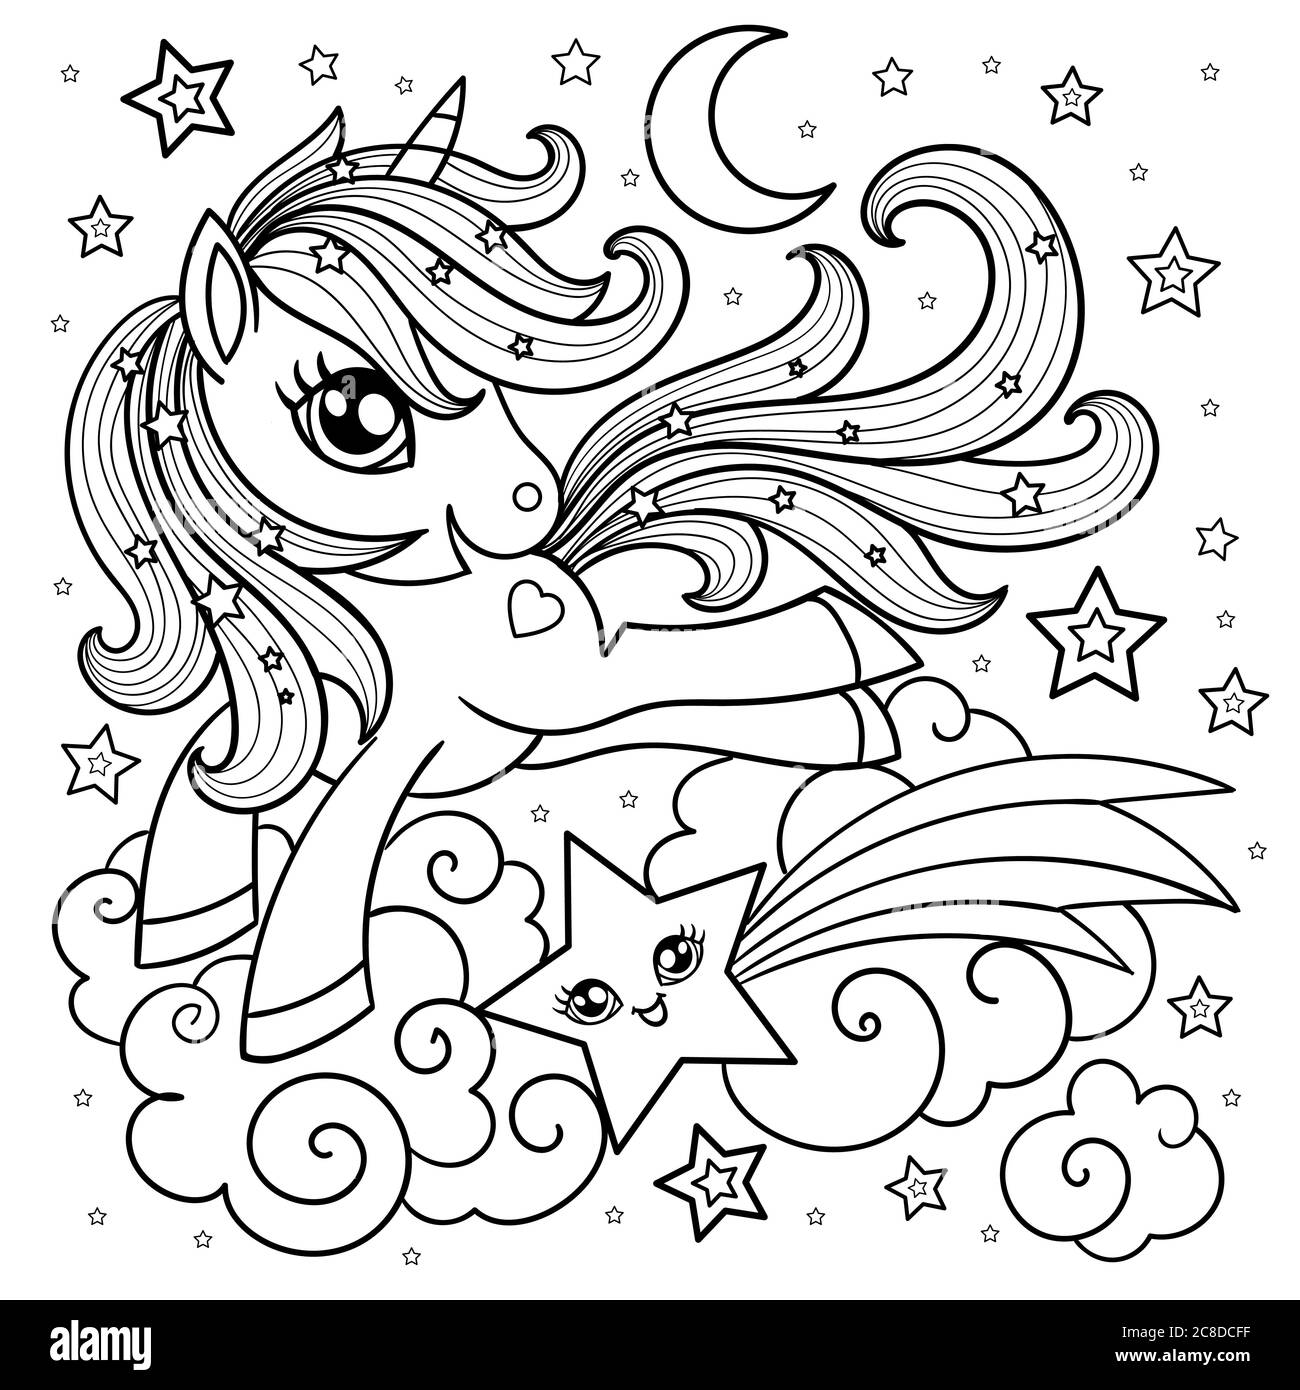 Carino unicorno cartoon su una nuvola con una stella. Bianco e nero. Illustrazione per bambini. Per la progettazione di stampe, poster, libri da colorare, cartoline, s Illustrazione Vettoriale